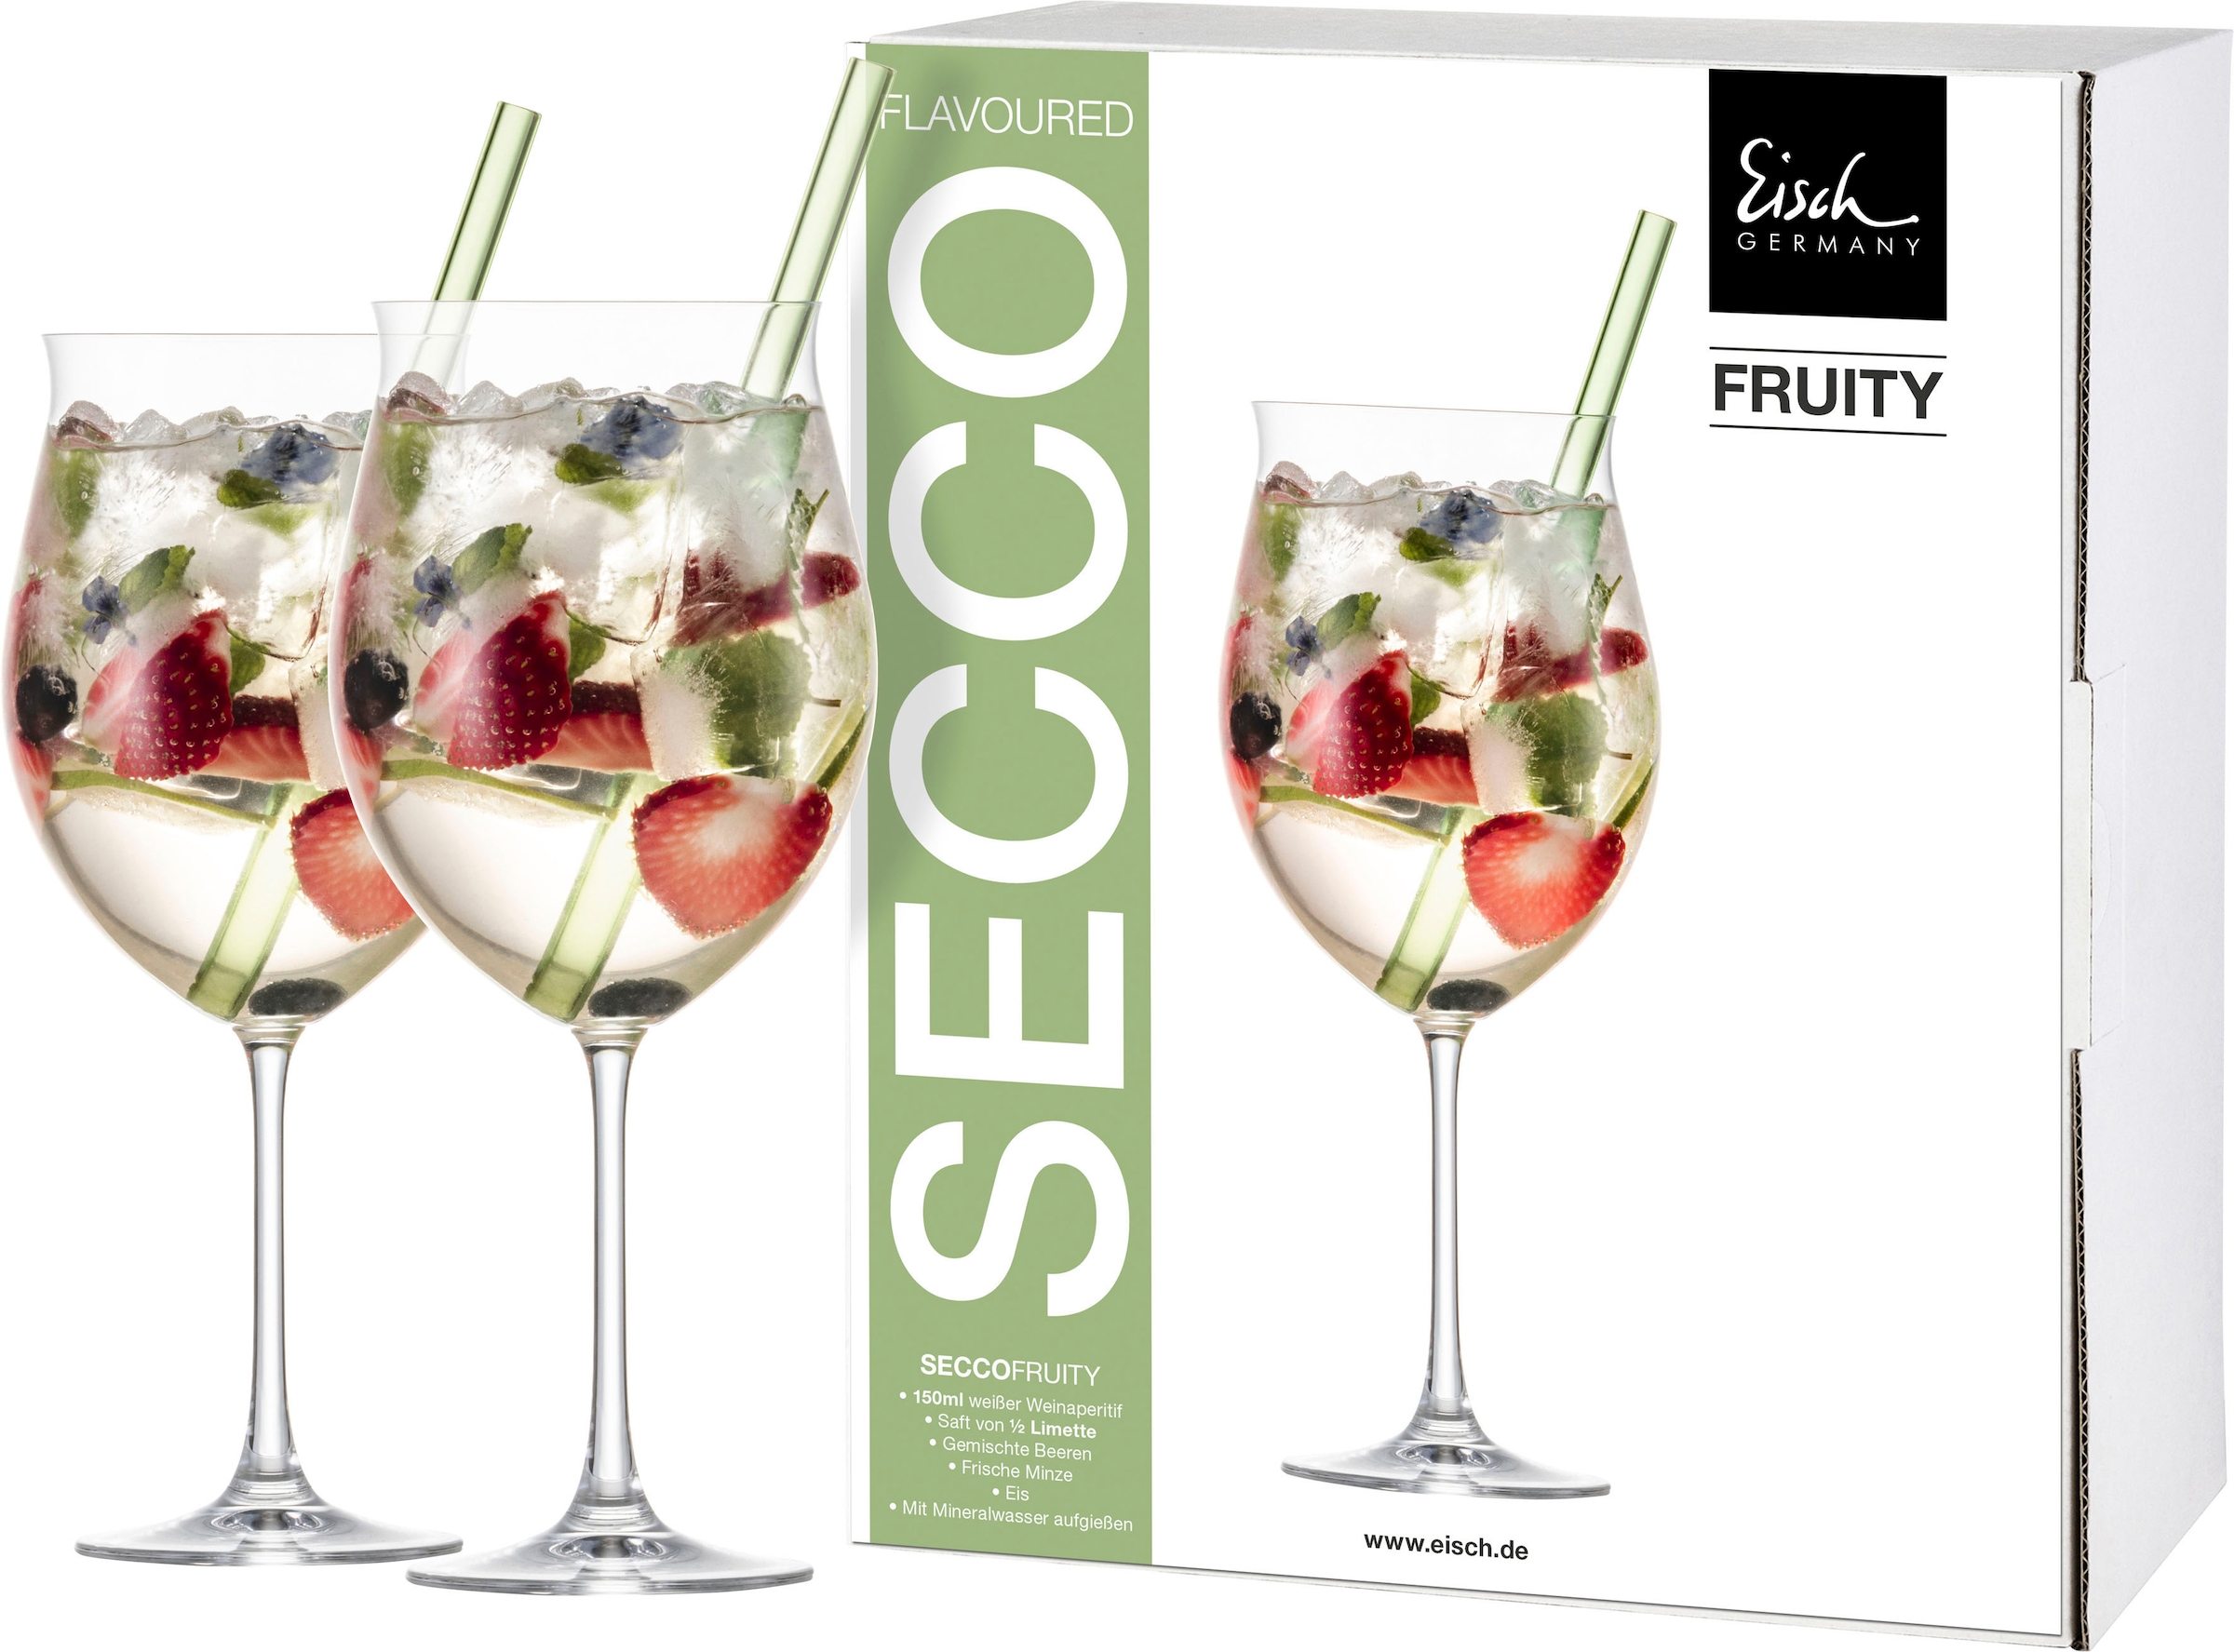 Eisch Cocktailglas »SECCO FLAVOURED«, (Set, 2 tlg., 2 Gläser im Geschenkkarton), Fruity, mit grünem Glashalm, 2-teilig